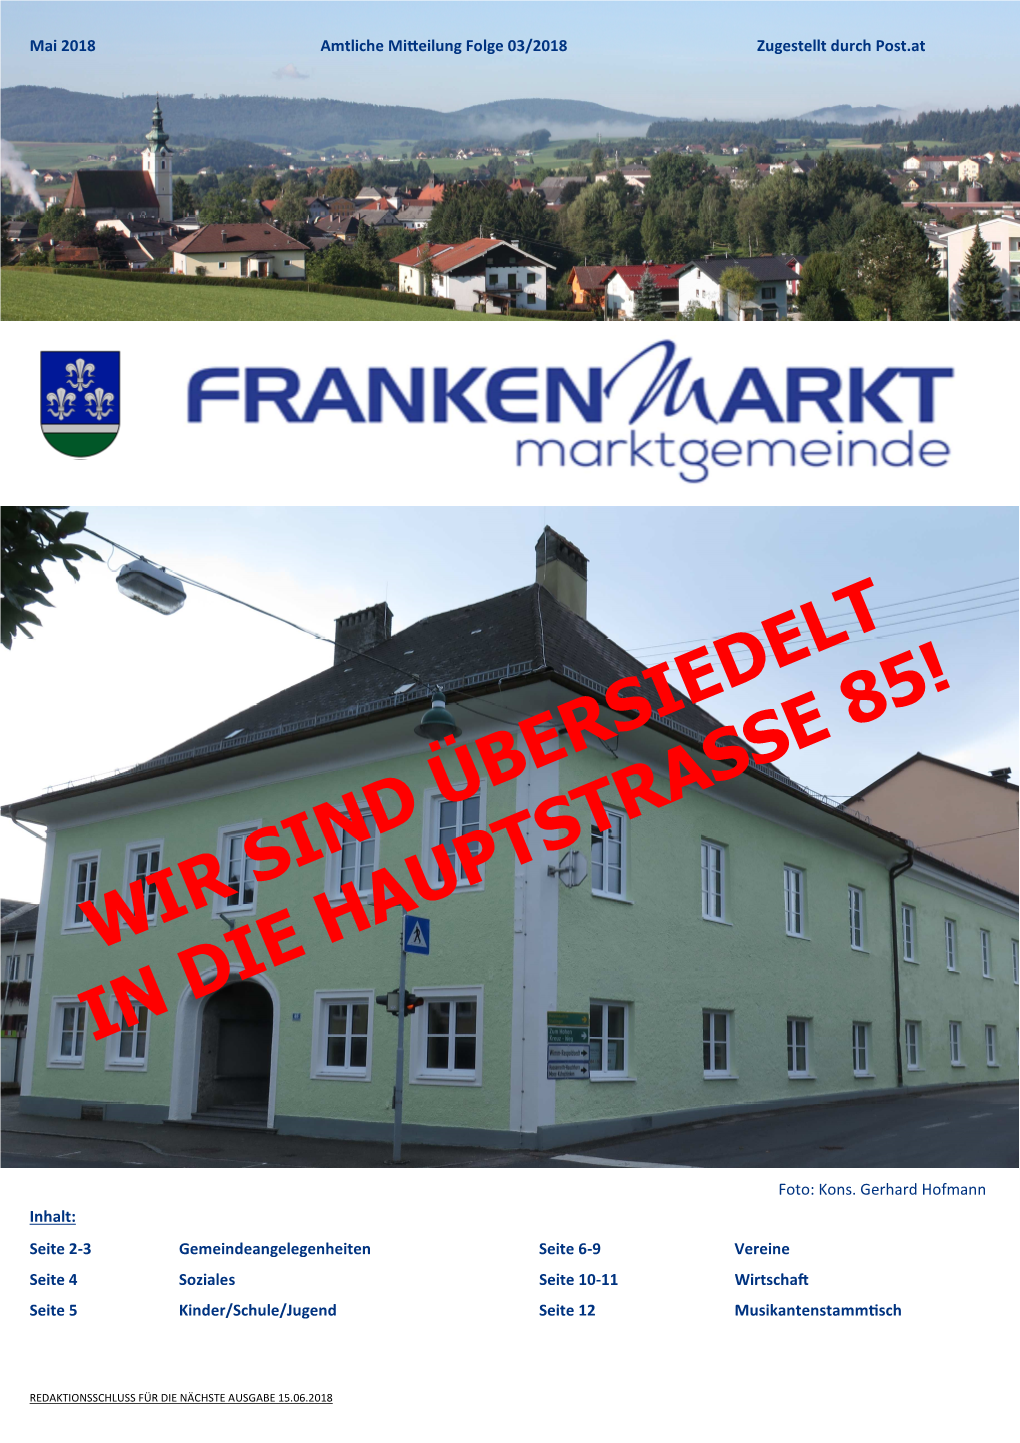 Gemeindeinformation Frankenmarkt Seite 1 Mai 2018 Amtliche Mi Eilung